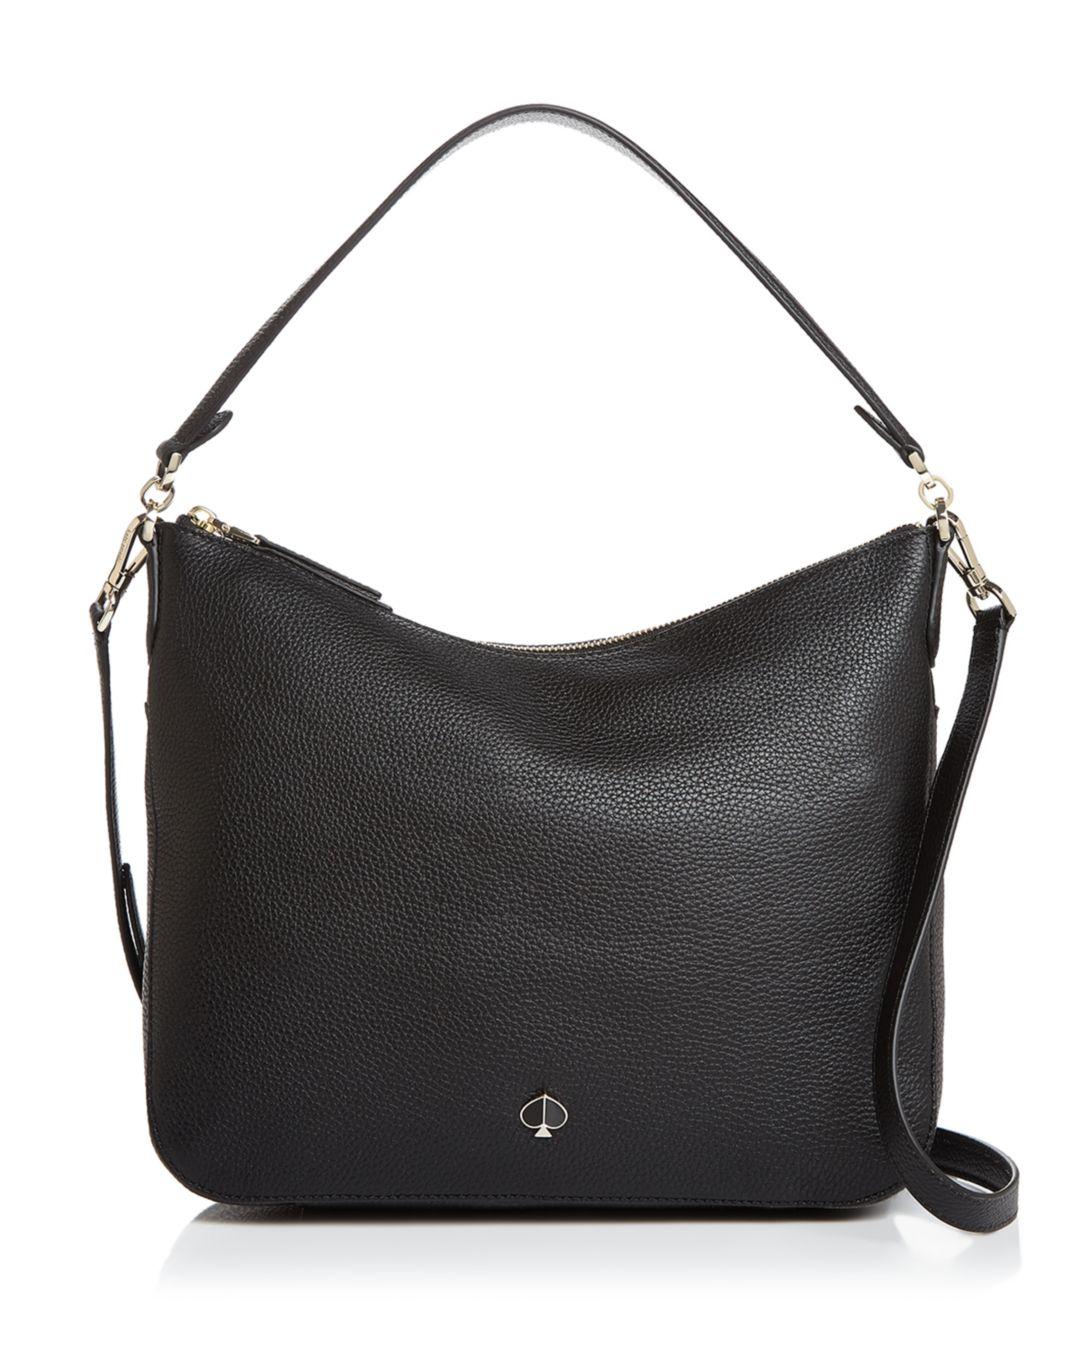 Kate Spade Medium Pebbled Leather Shoulder Bag in Black/Gold (Black ...